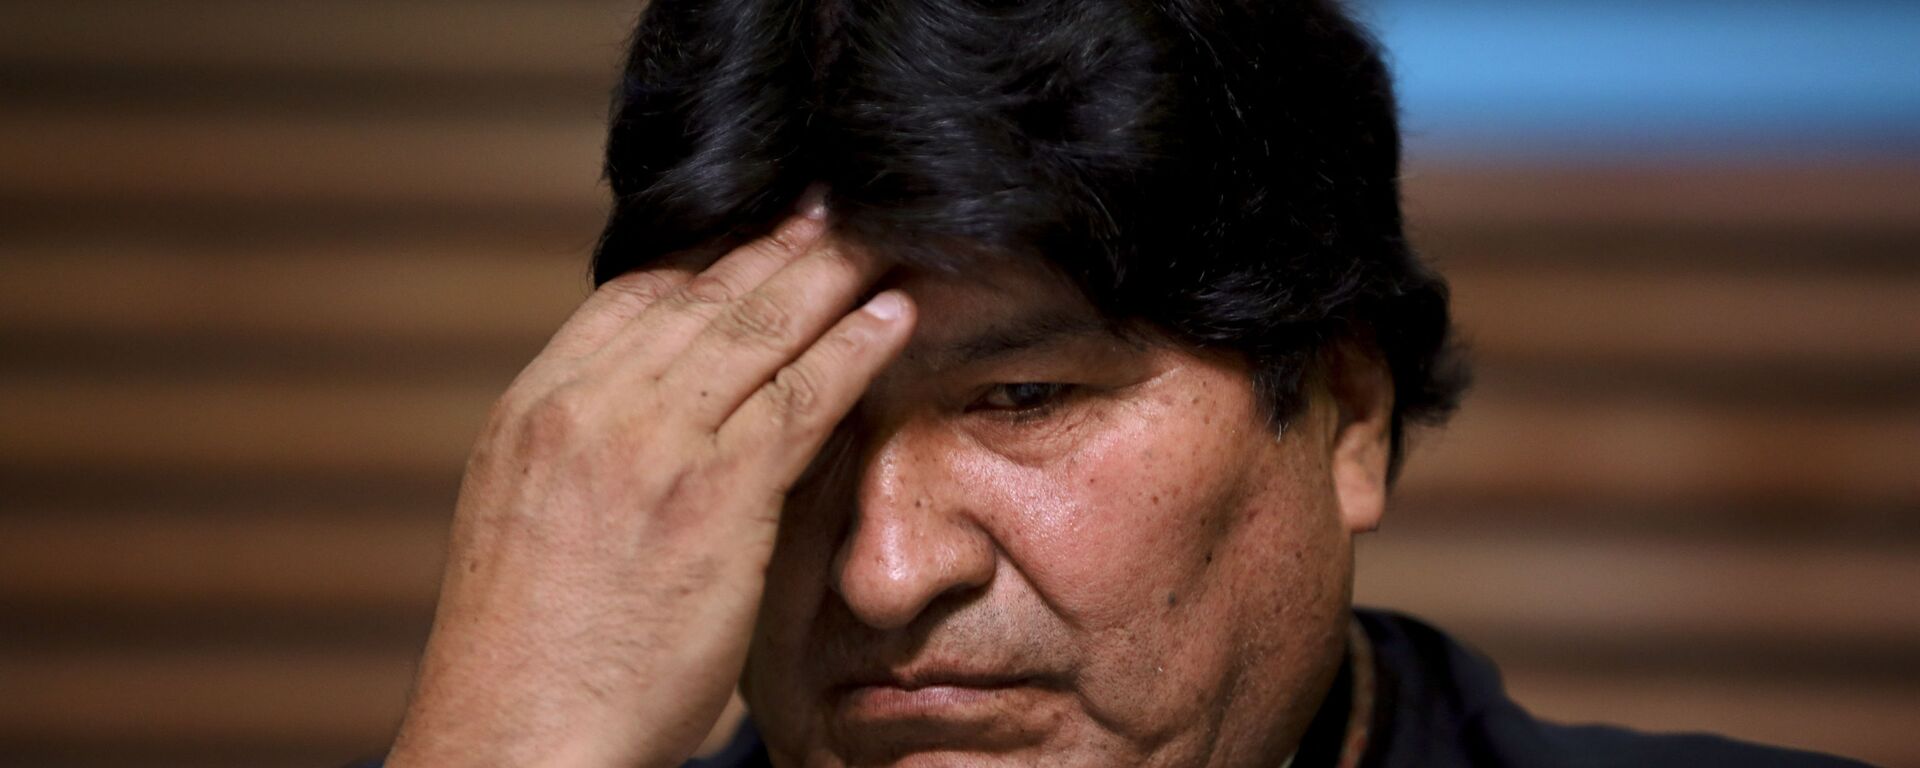 Evo Morales, expresidente de Bolivia - Sputnik Mundo, 1920, 02.09.2021